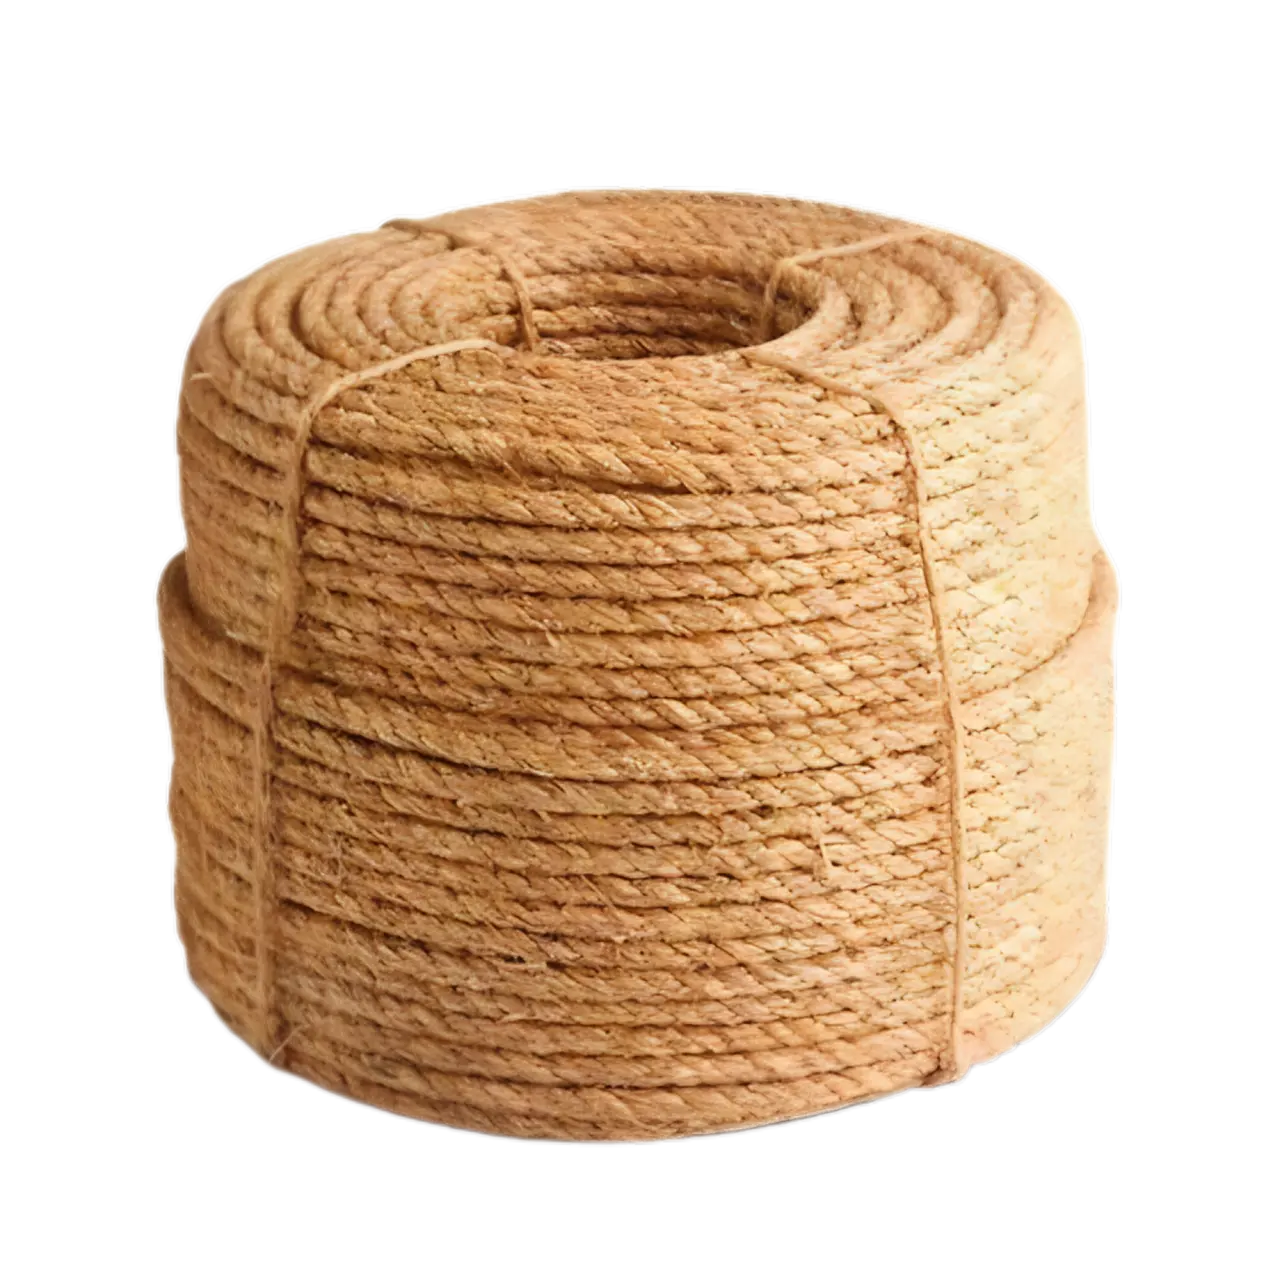 Cuerda de fibra de coco orgánica de la mejor calidad, cuerda de coco multiusos para las industrias creativas y de la construcción